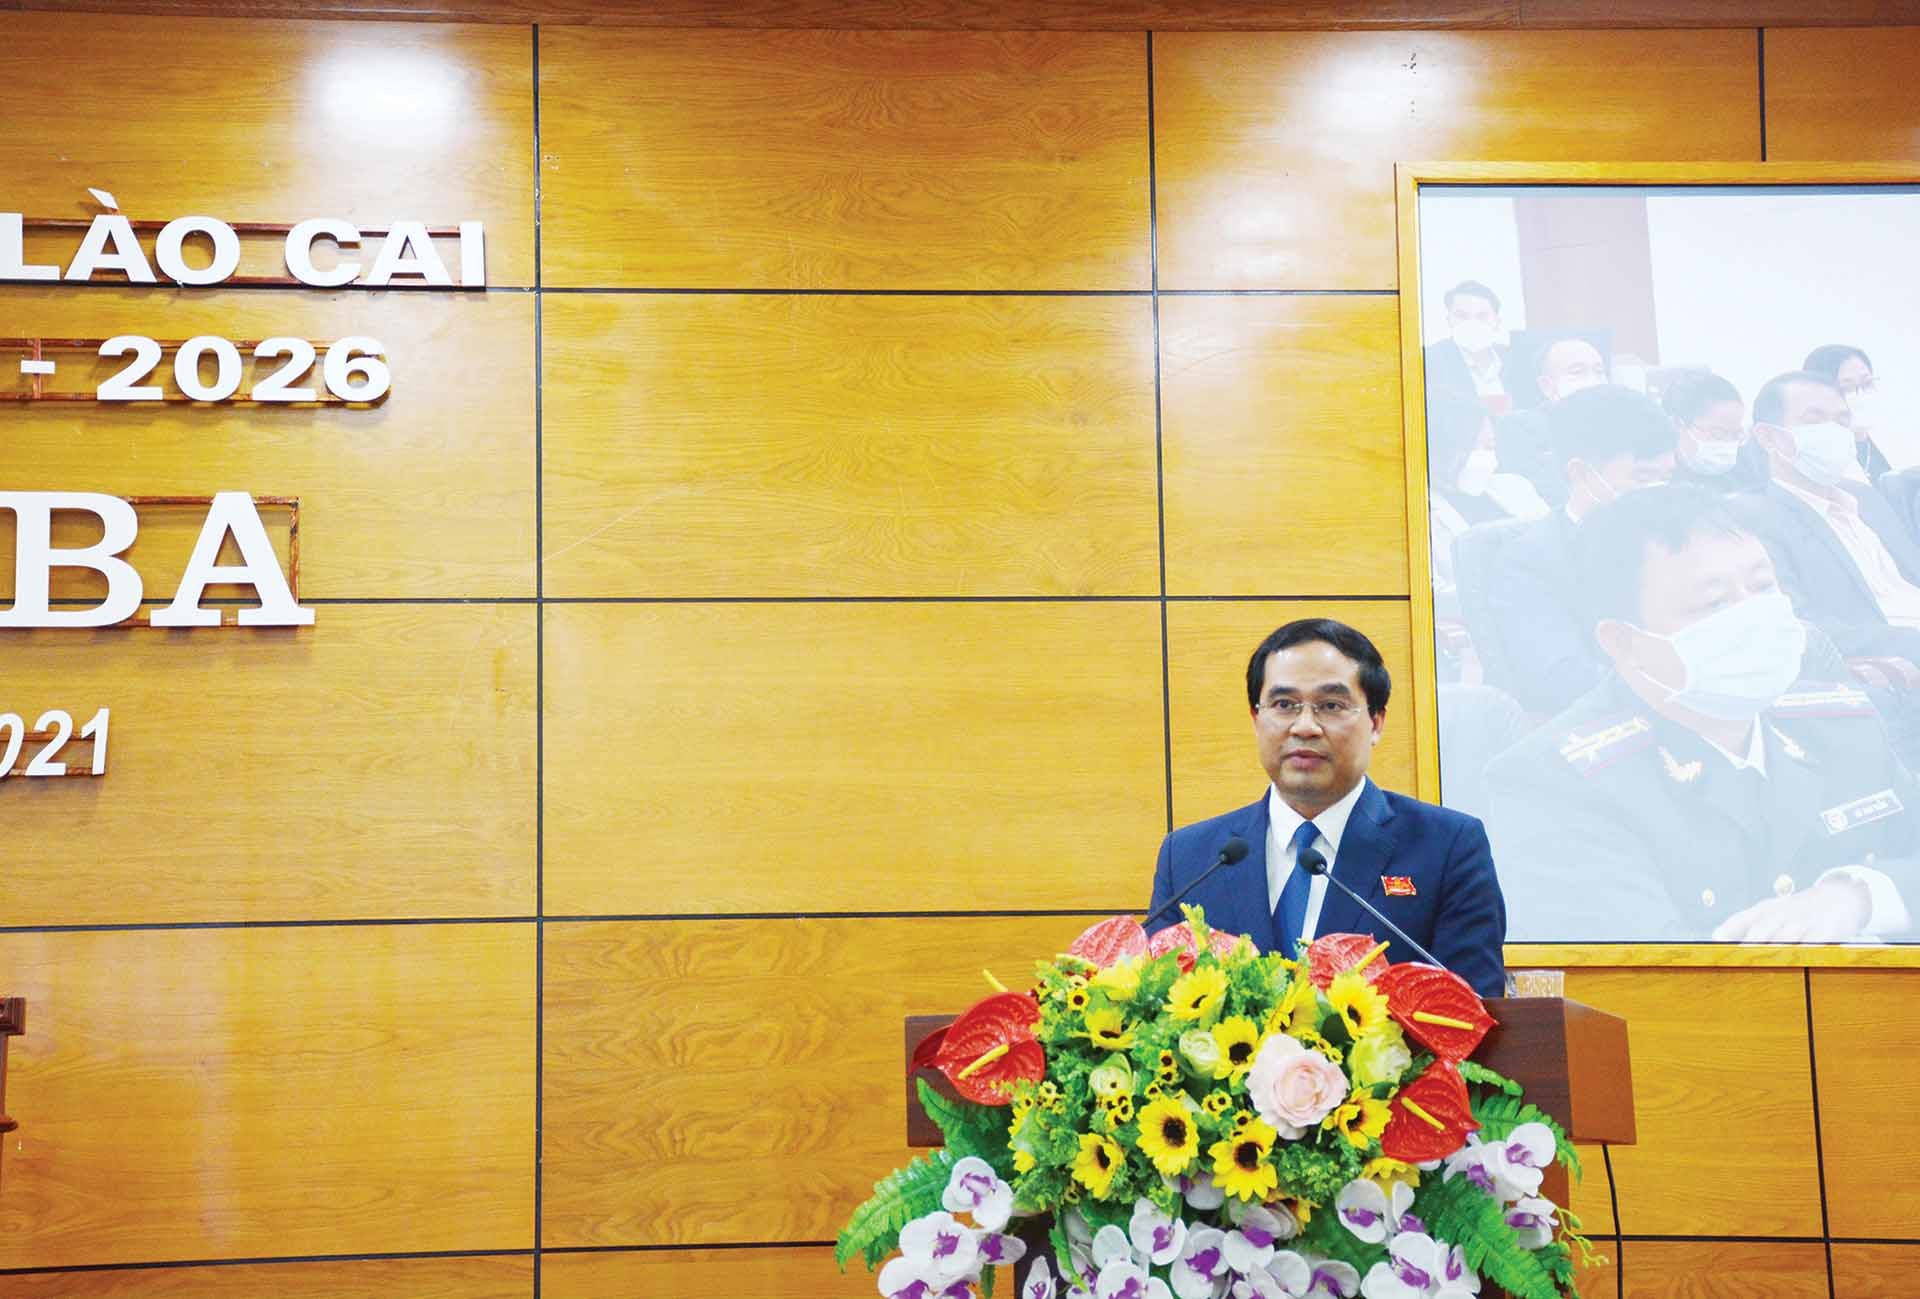 Phó Bí thư Tỉnh ủy, Chủ tịch UBND tỉnh Lào Cai Trịnh Xuân Trường.